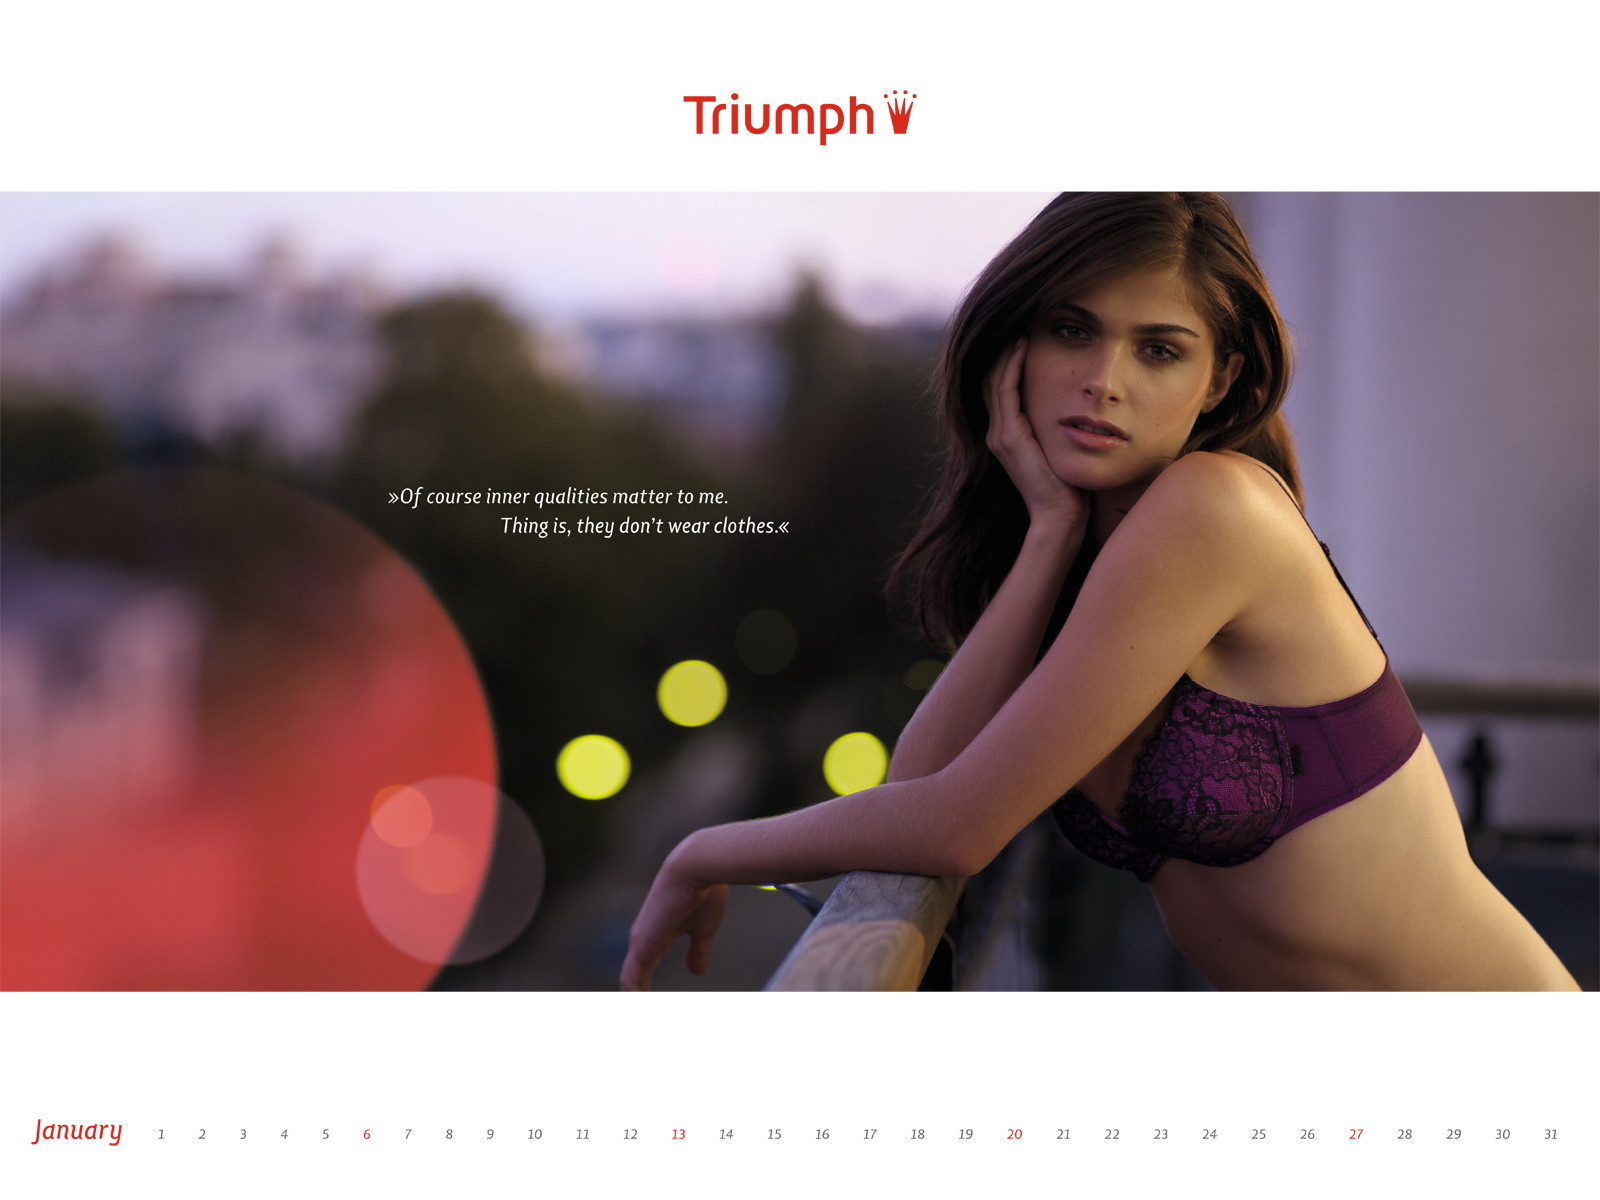 Elisa sednaoui en très sexy calendrier lingerie triumph 2012
 #75276937